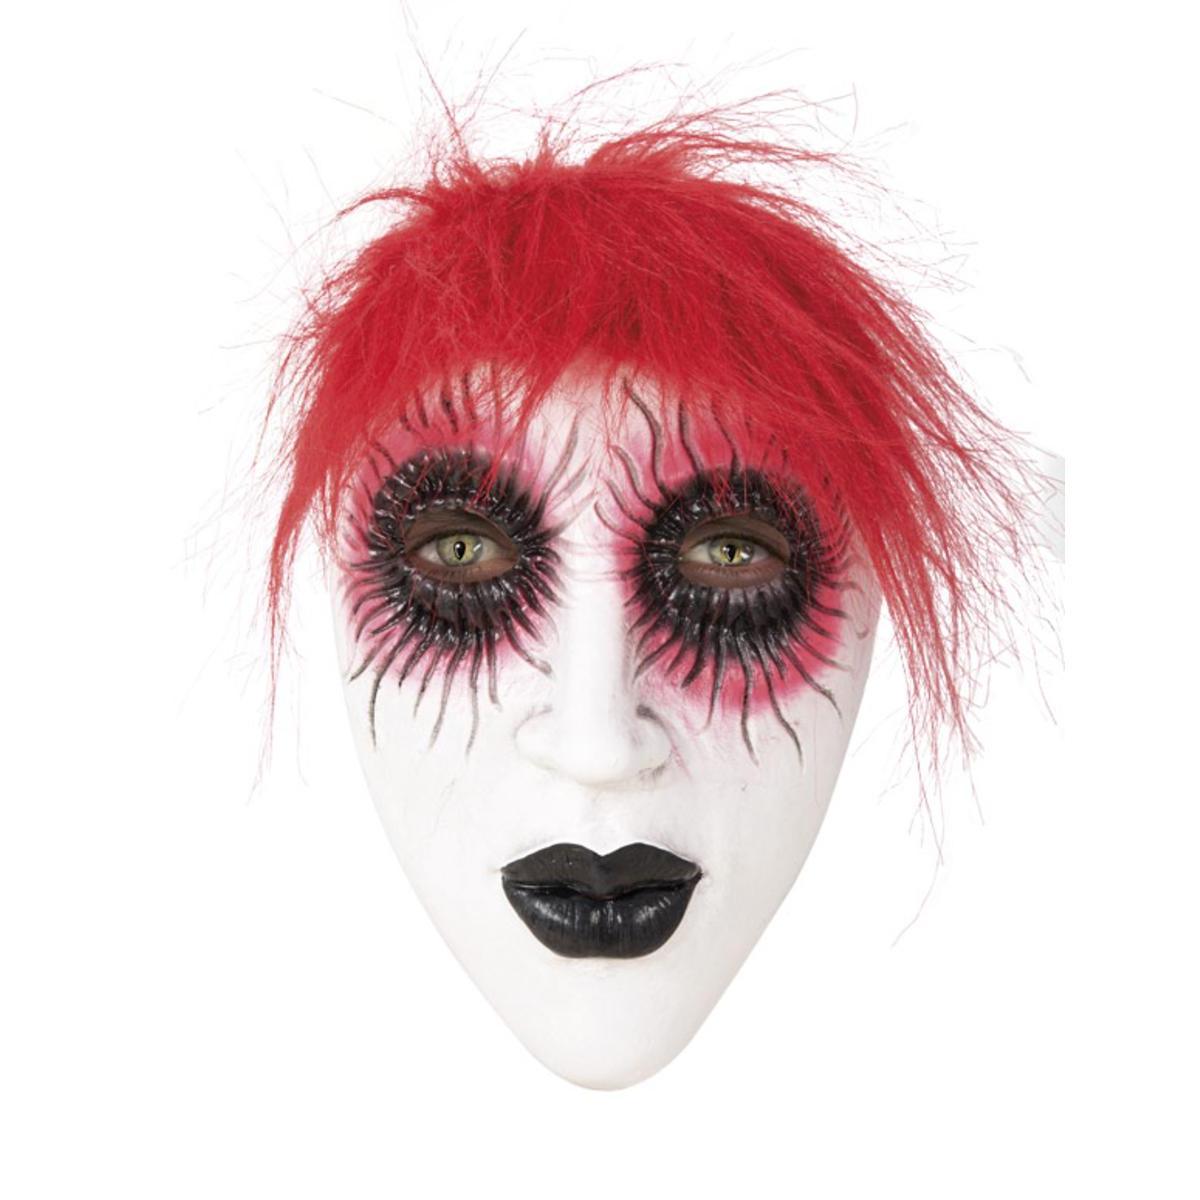 Masque de femme aux larmes sanglantes avec cheveux - Taille adulte - L 23 x H 2 x l 18 cm - Multicolore - PTIT CLOWN